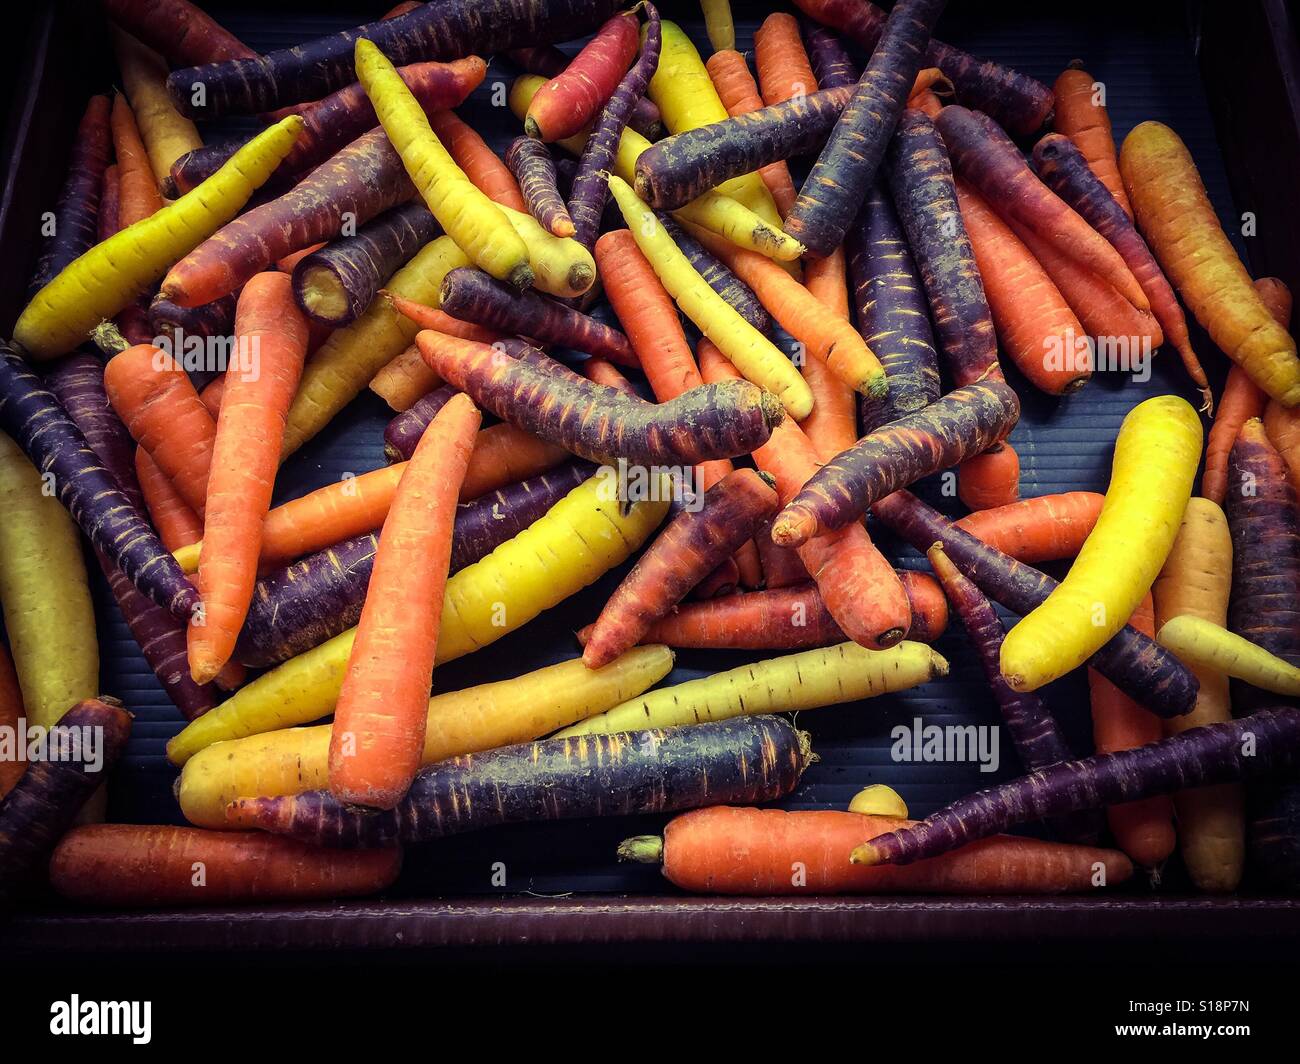 Carrots many colours Stock Photo